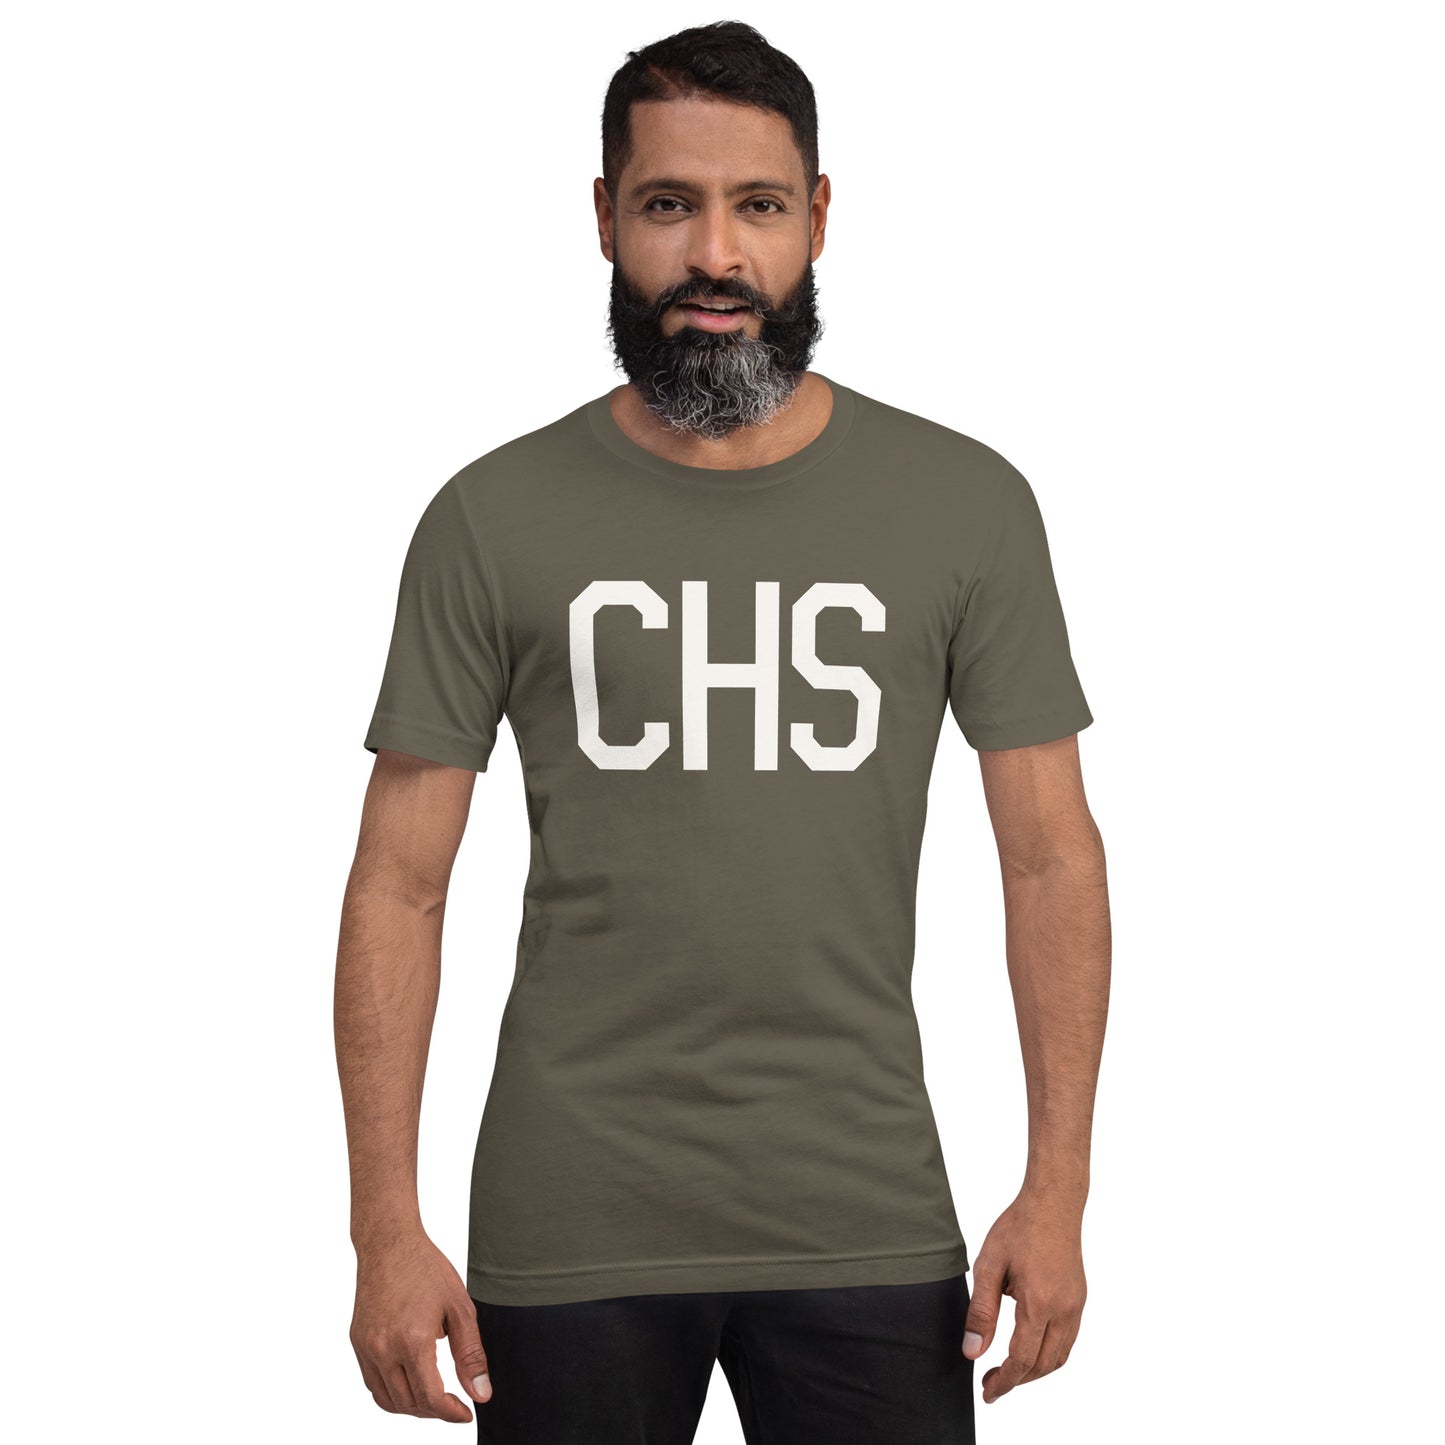 Airport Code T-Shirt - White Graphic • CHS Charleston • YHM Designs - Image 01